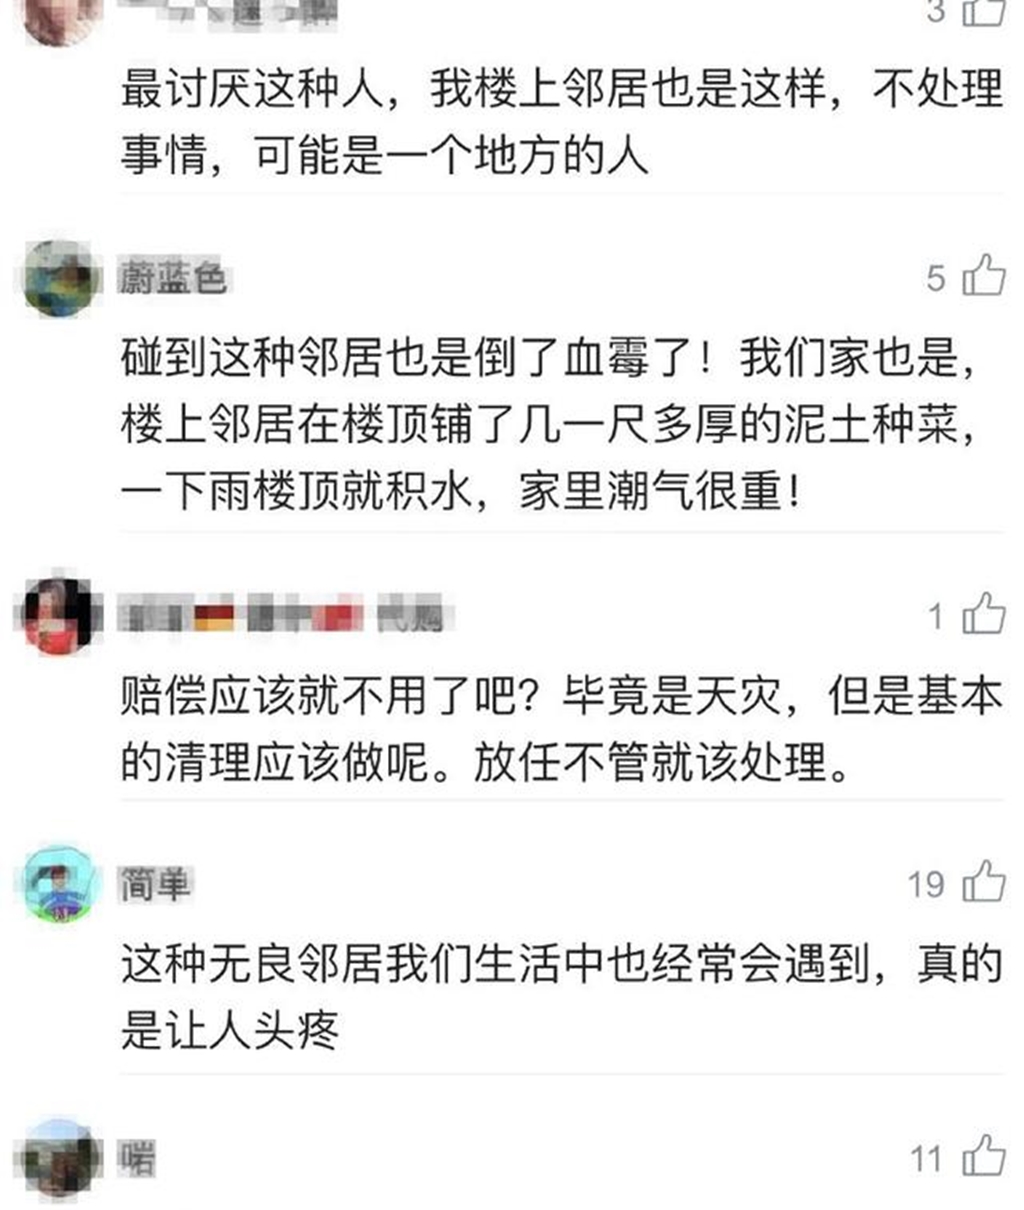 網友也紛紛支持吳吳鎮宇，並大贊他做得對